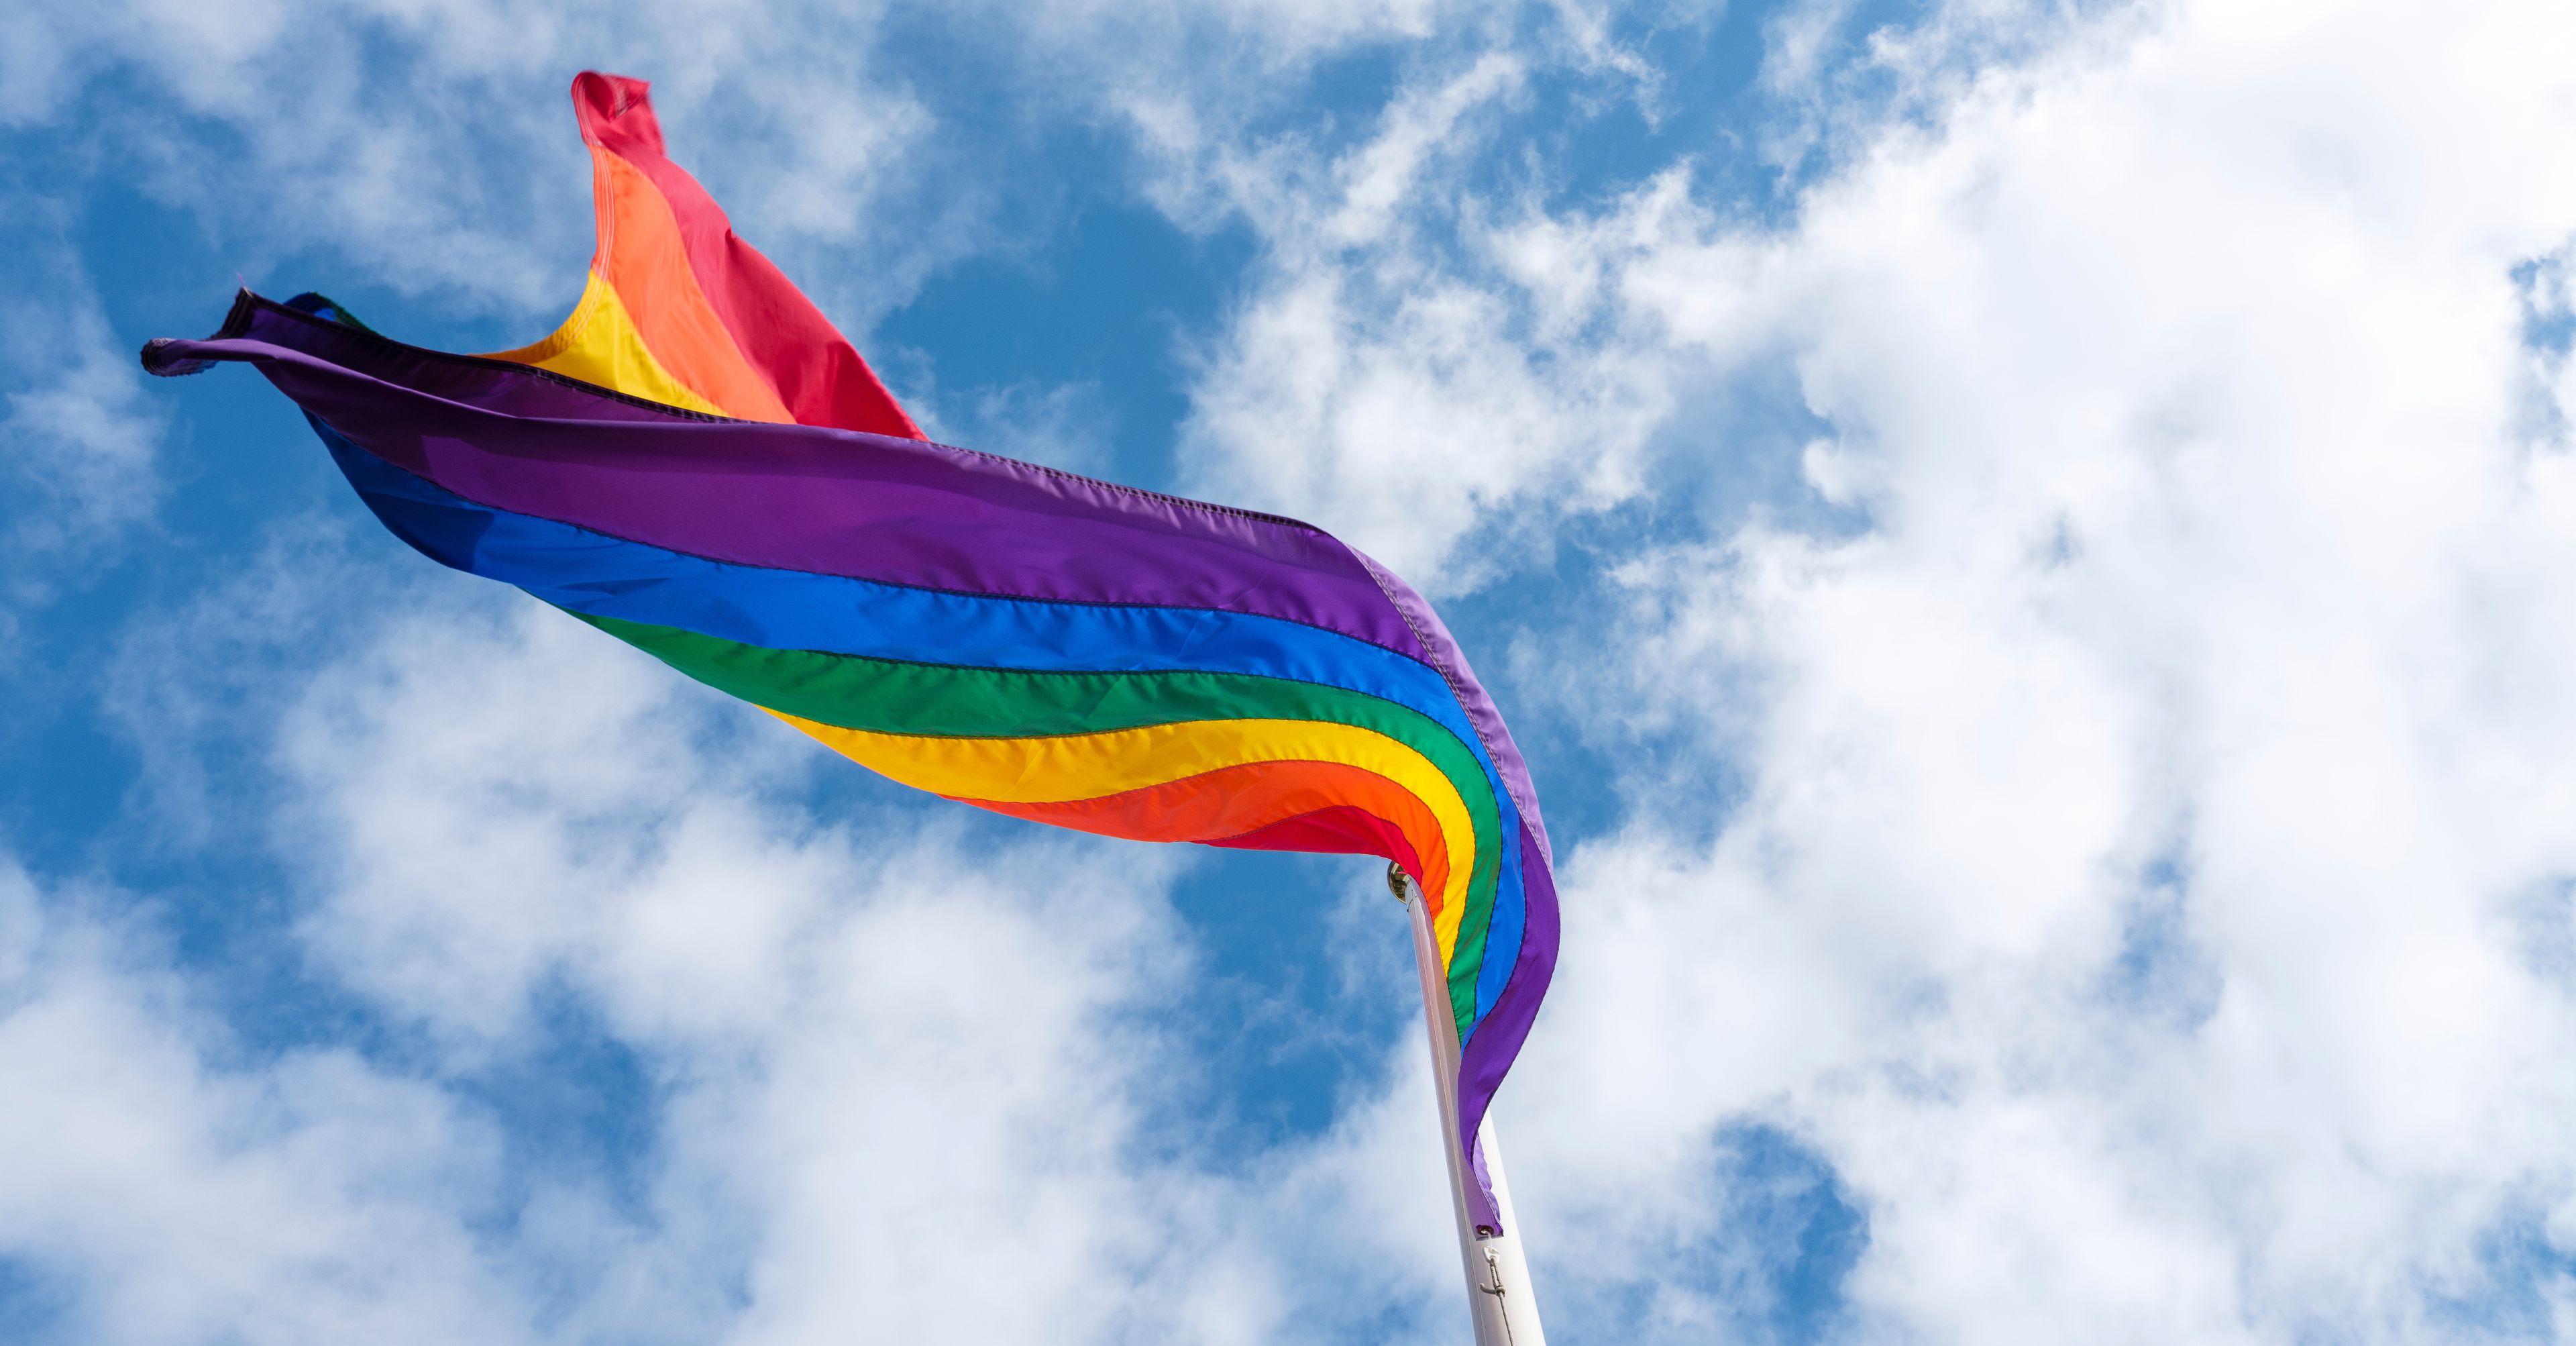  The gay pride flag flies in the Icelandic wind